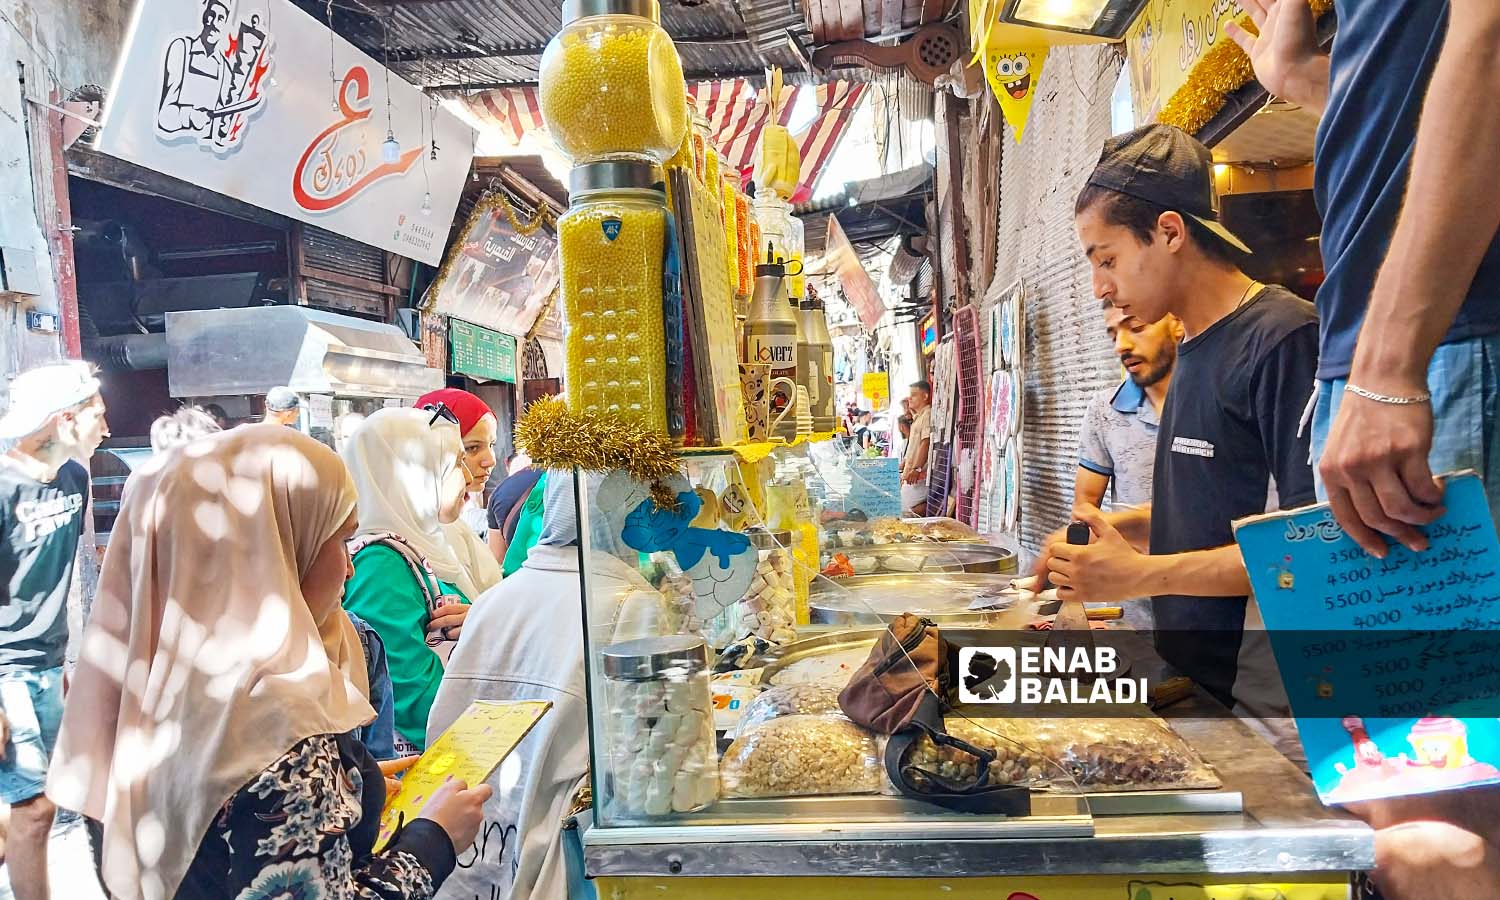 بسطة لبيع المثلجات والعصائر في حي القيمرية بدمشق - 26 من تموز 2023 (عنب بلدي / سارة الأحمد)
